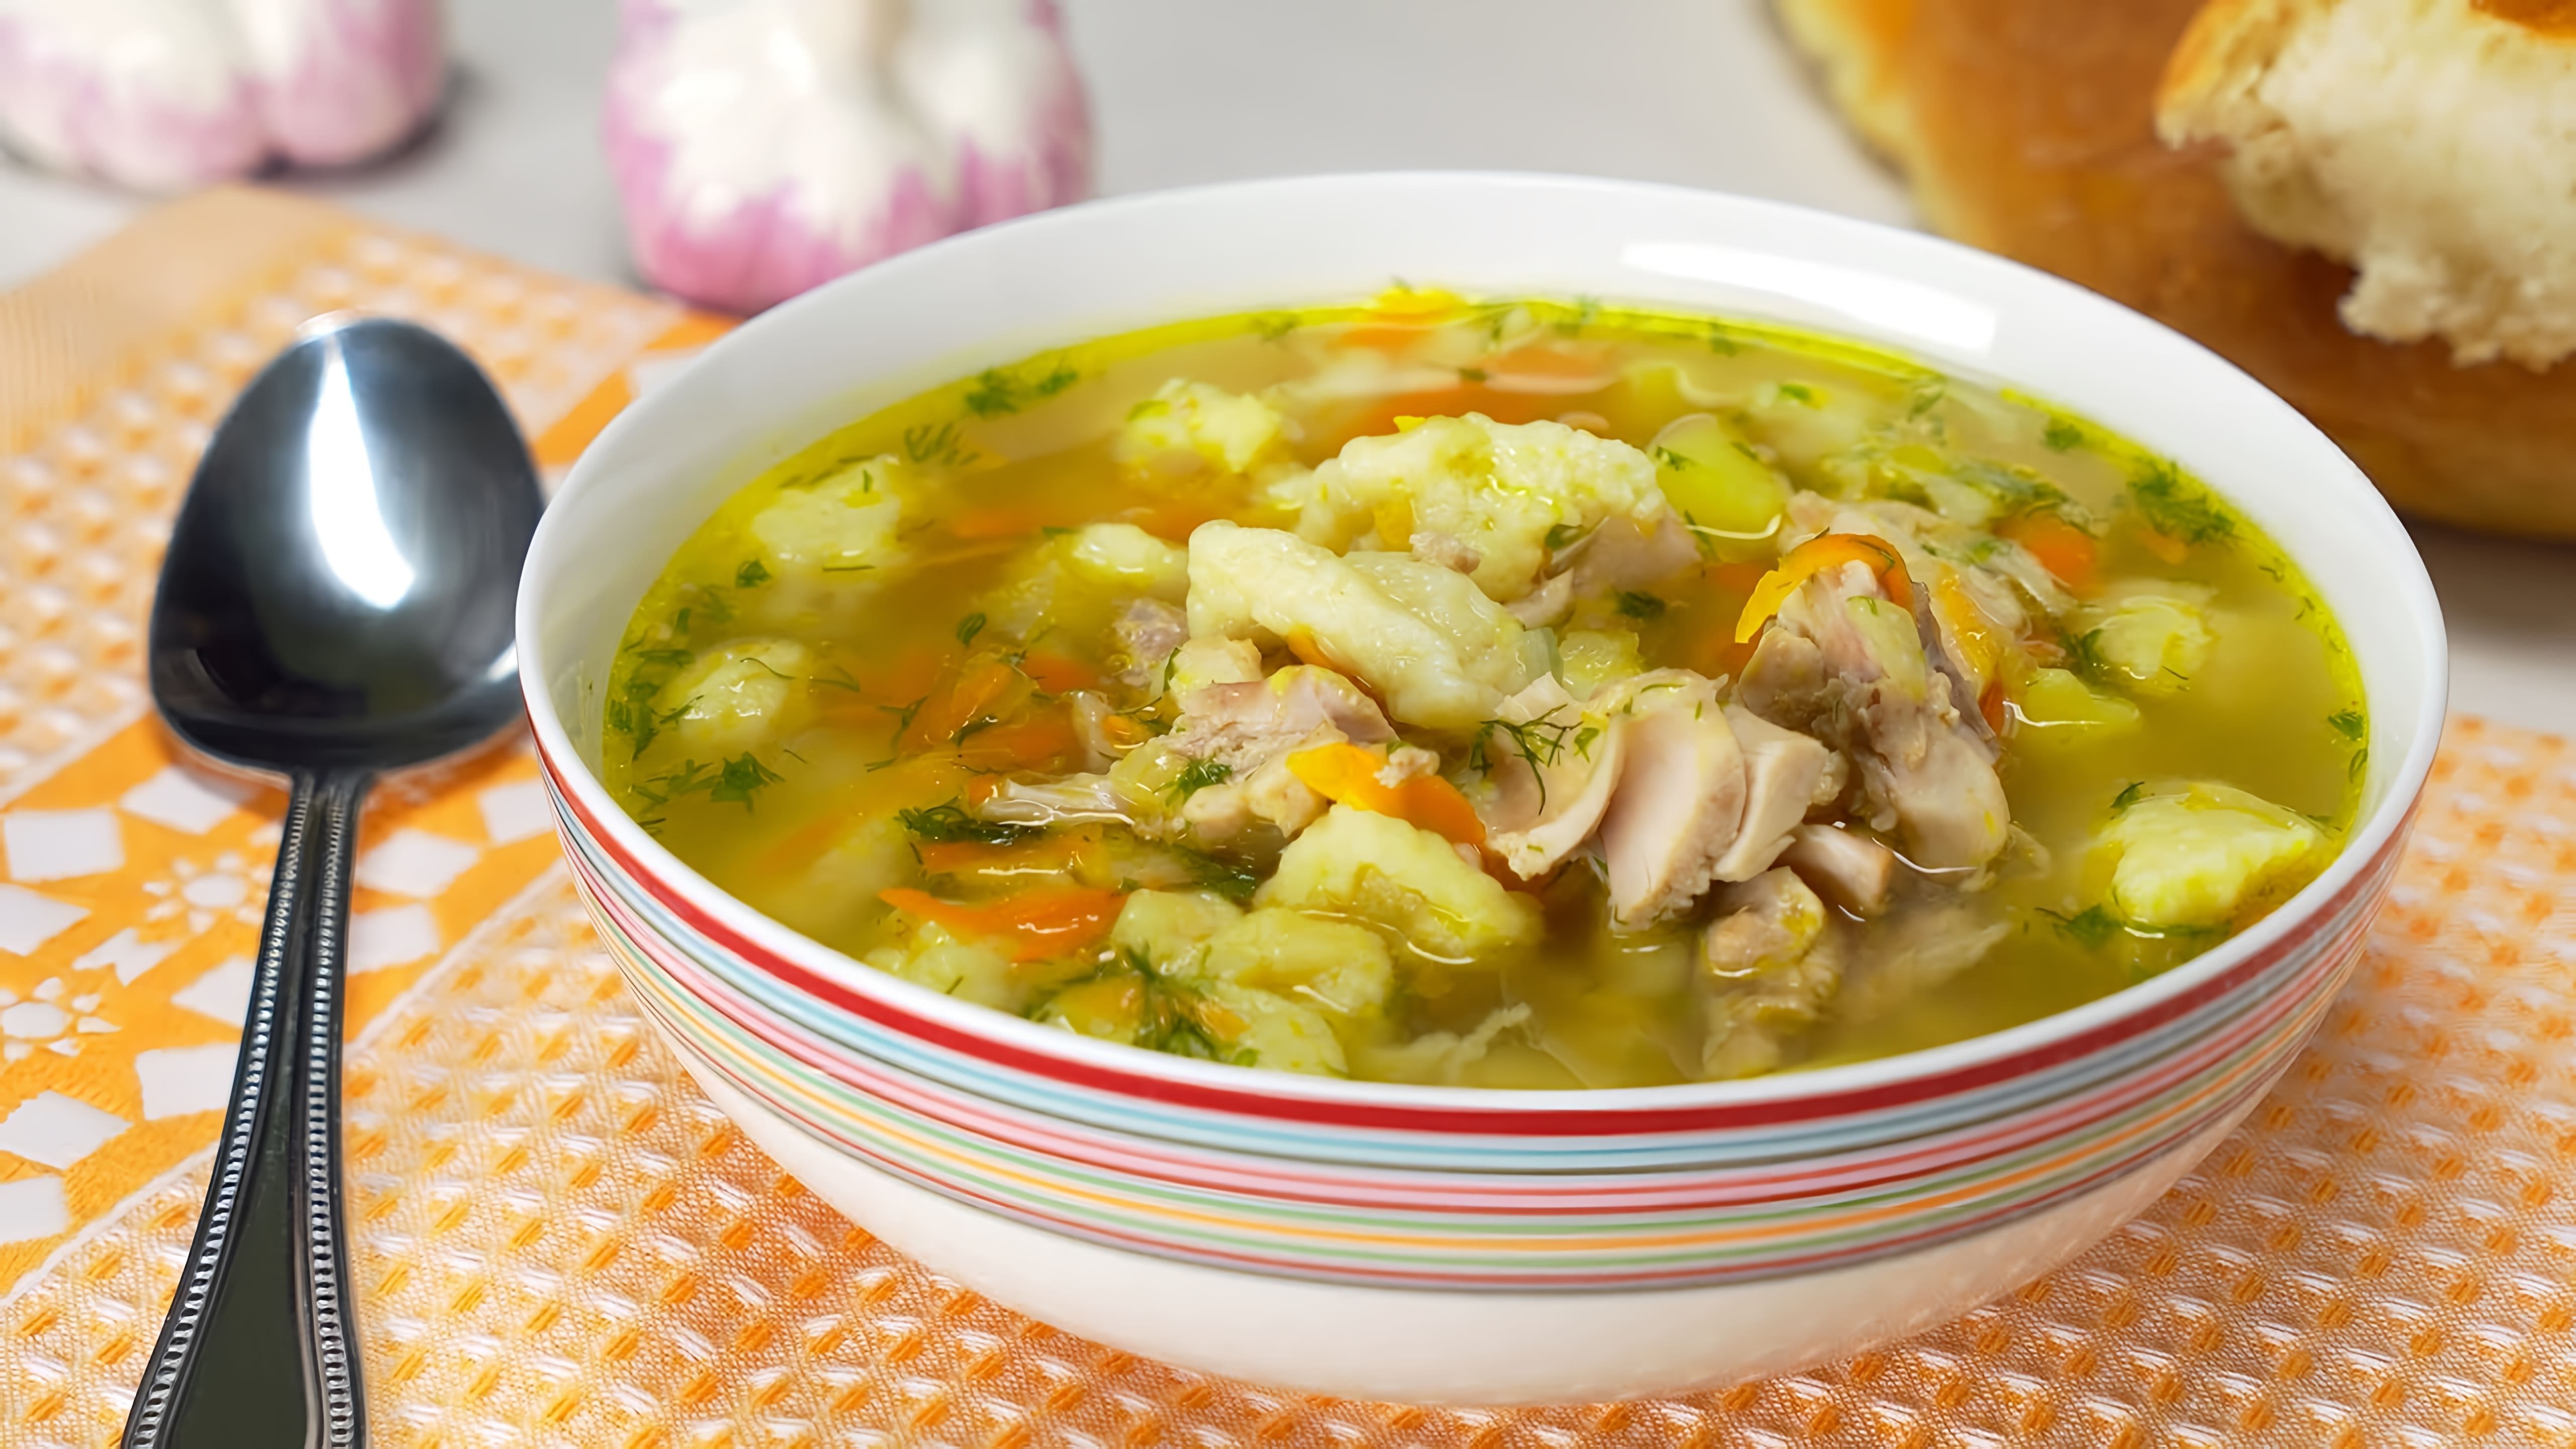 В данном видео демонстрируется рецепт приготовления куриного супа с клецками